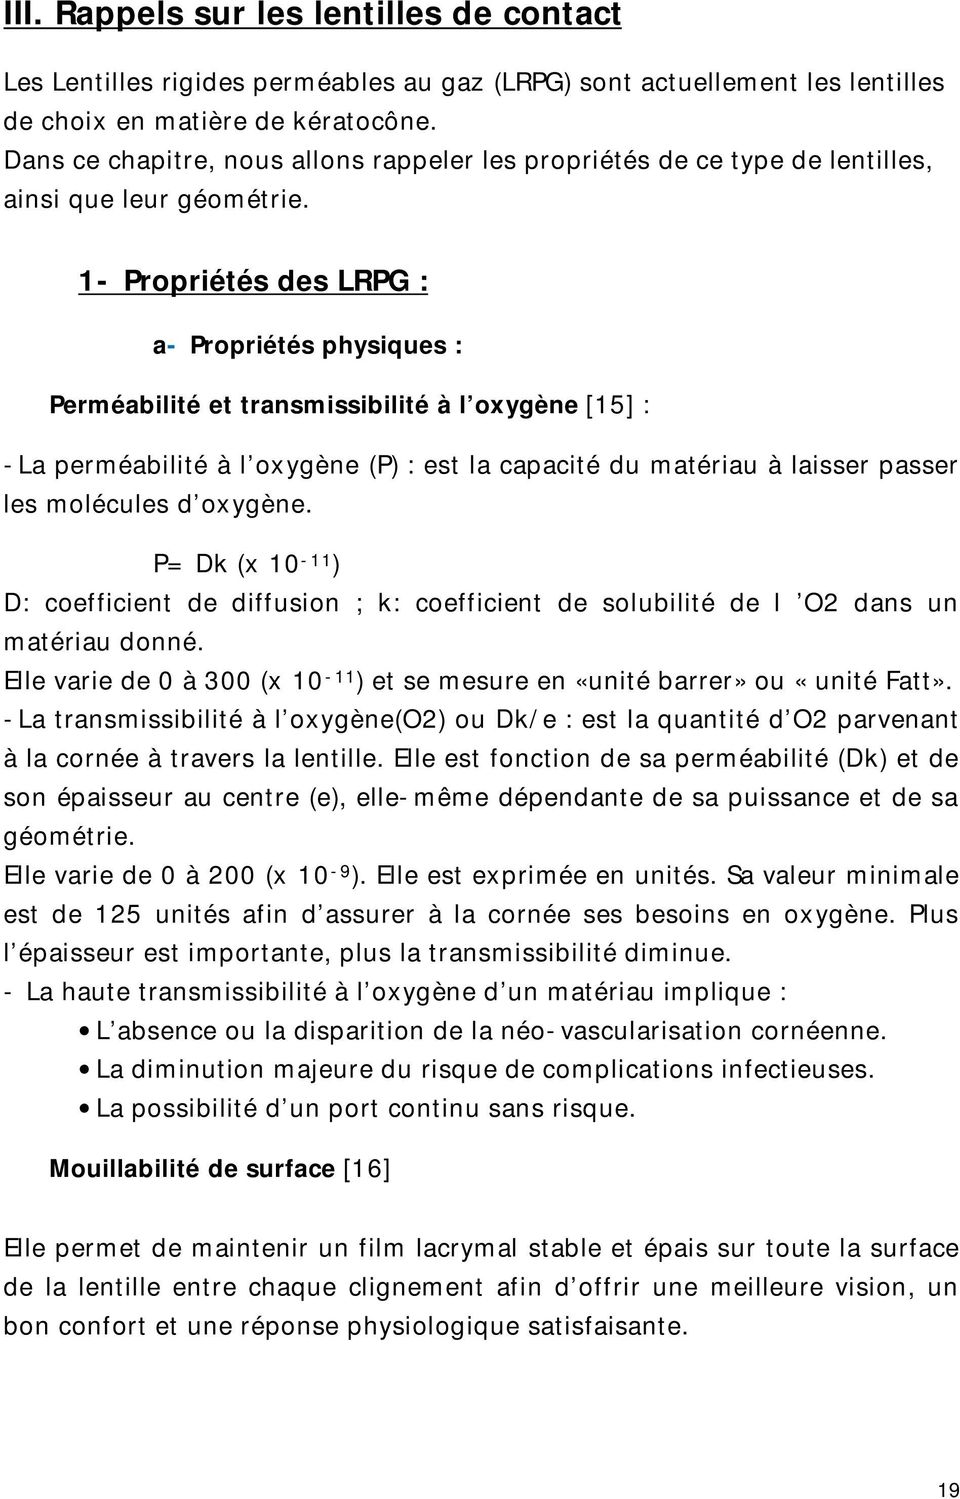 1- Propriétés des LRPG : a- Propriétés physiques : Perméabilité et transmissibilité à l oxygène [15] : -La perméabilité à l oxygène (P) : est la capacité du matériau à laisser passer les molécules d